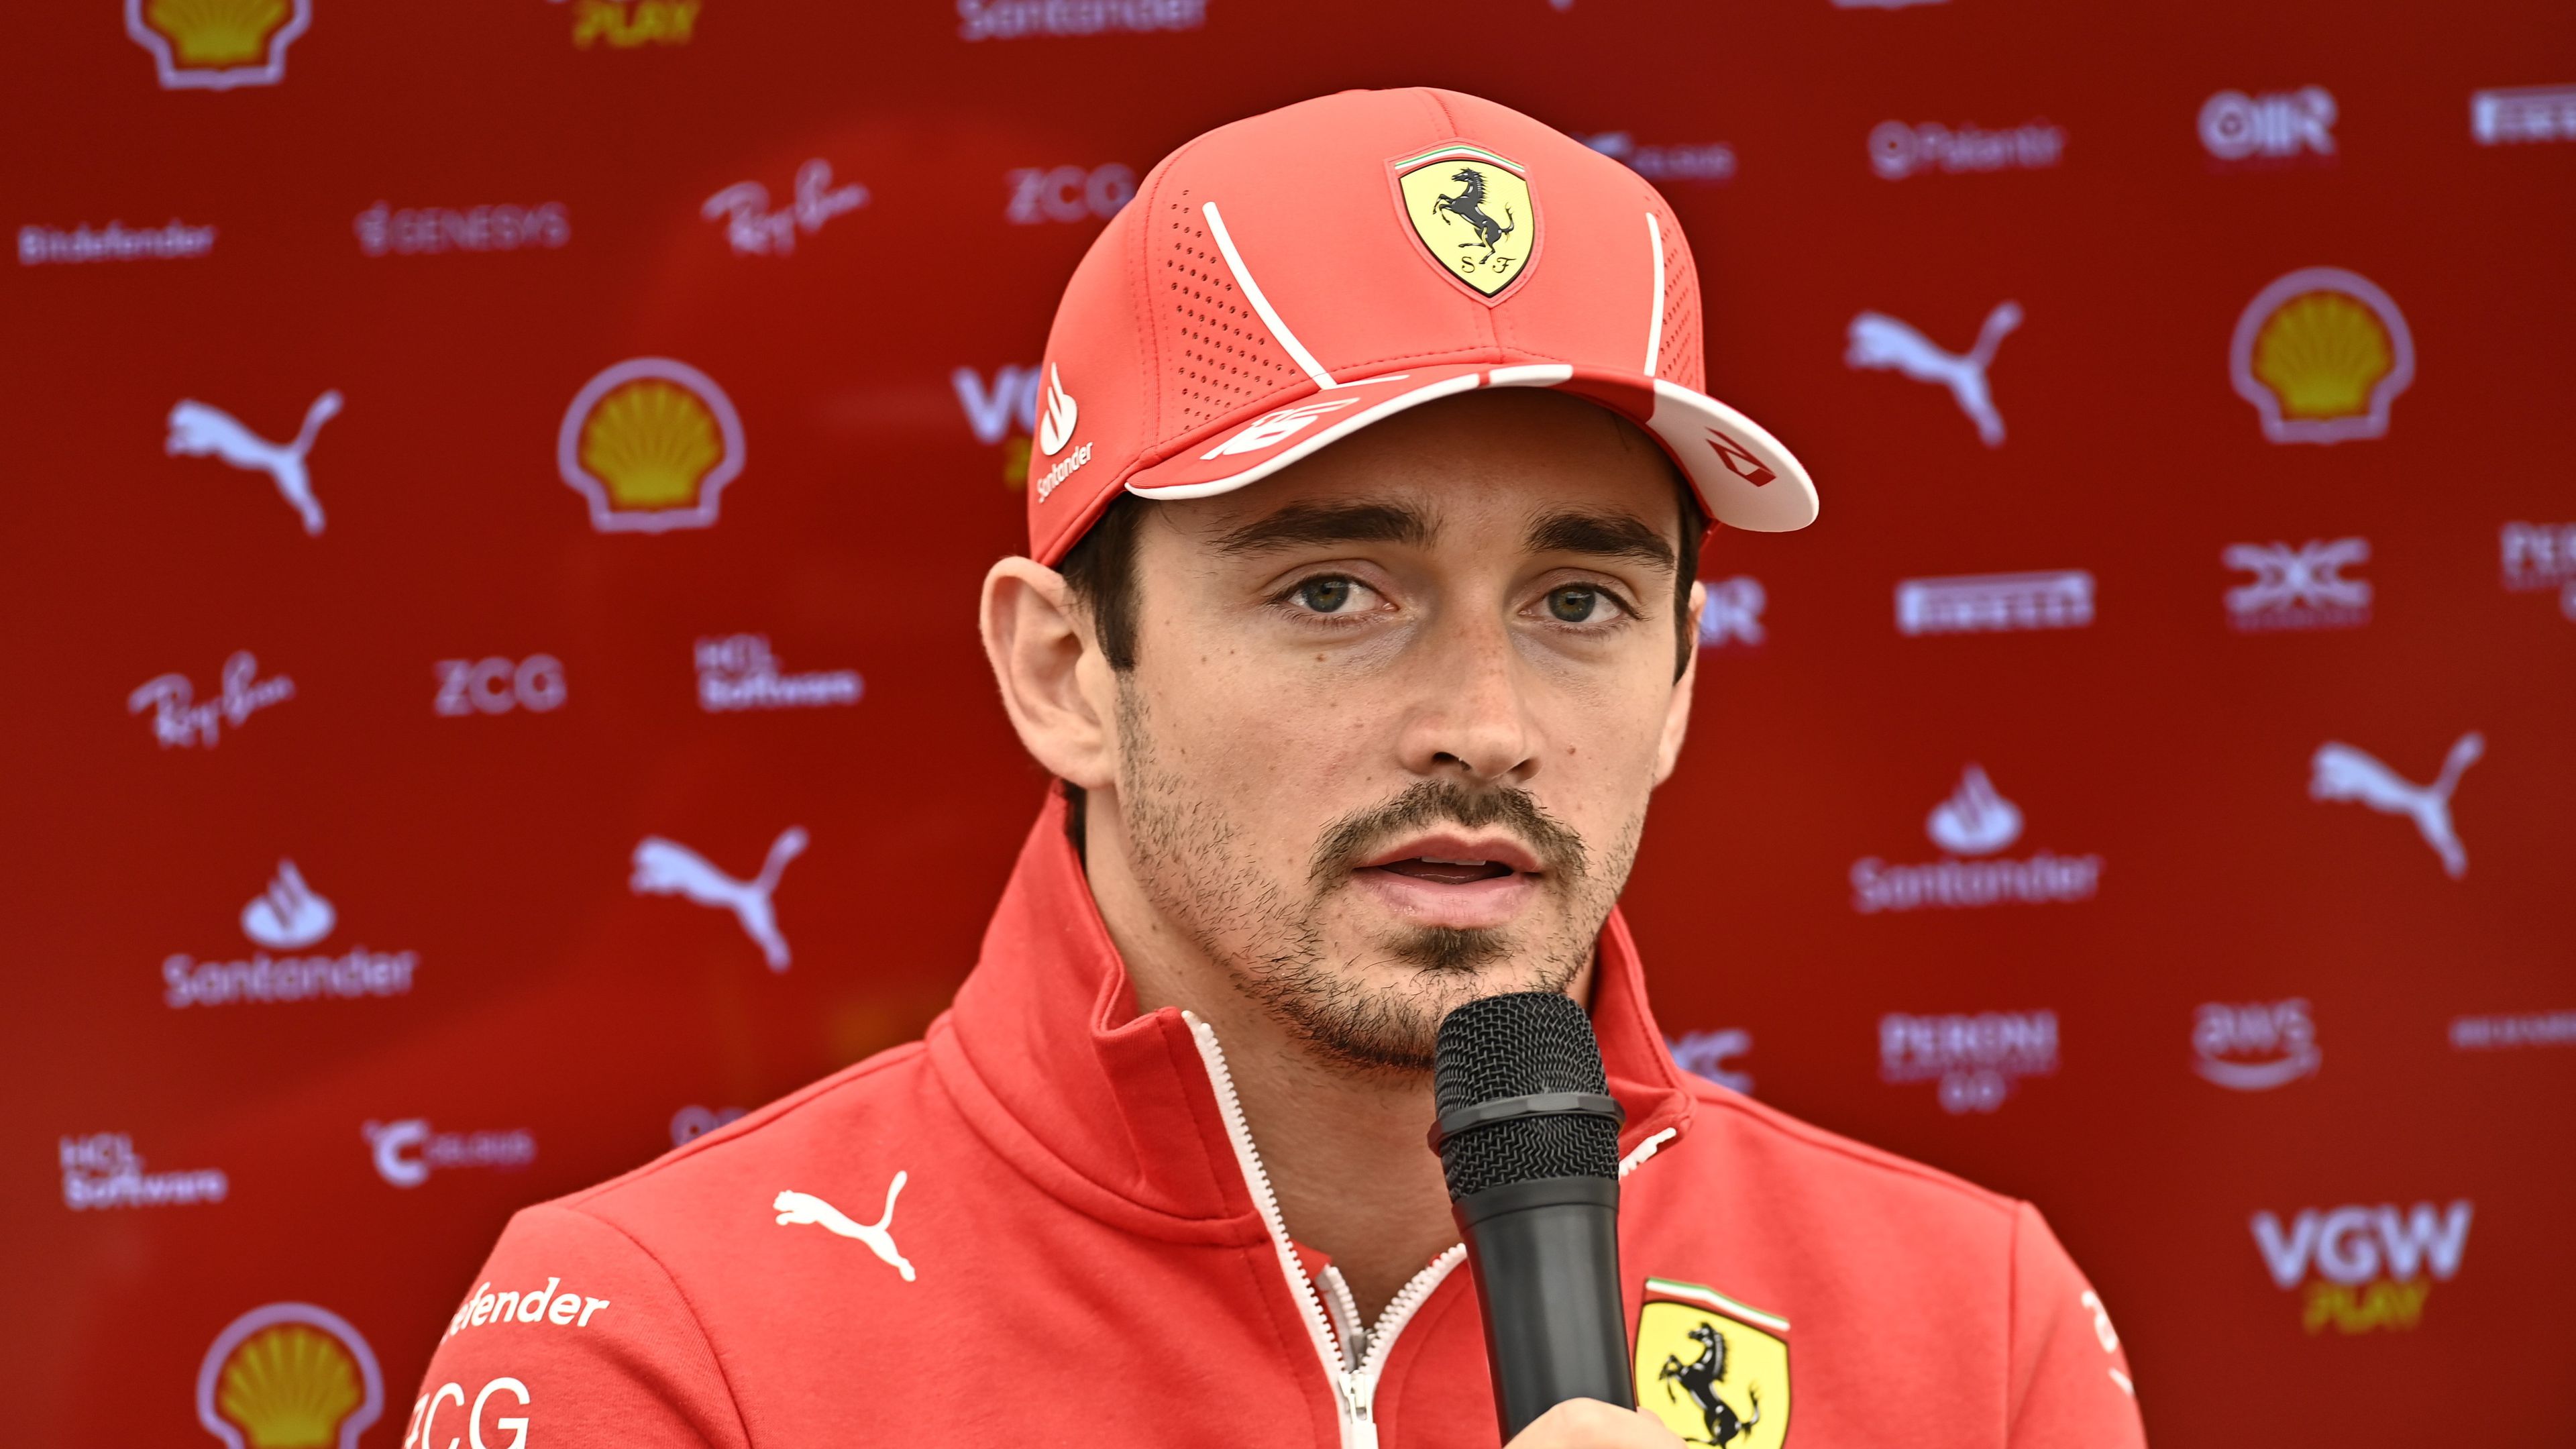 Szívmelengető: tragikusan meghalt barátjára emlékezik a Ferrari versenyzője